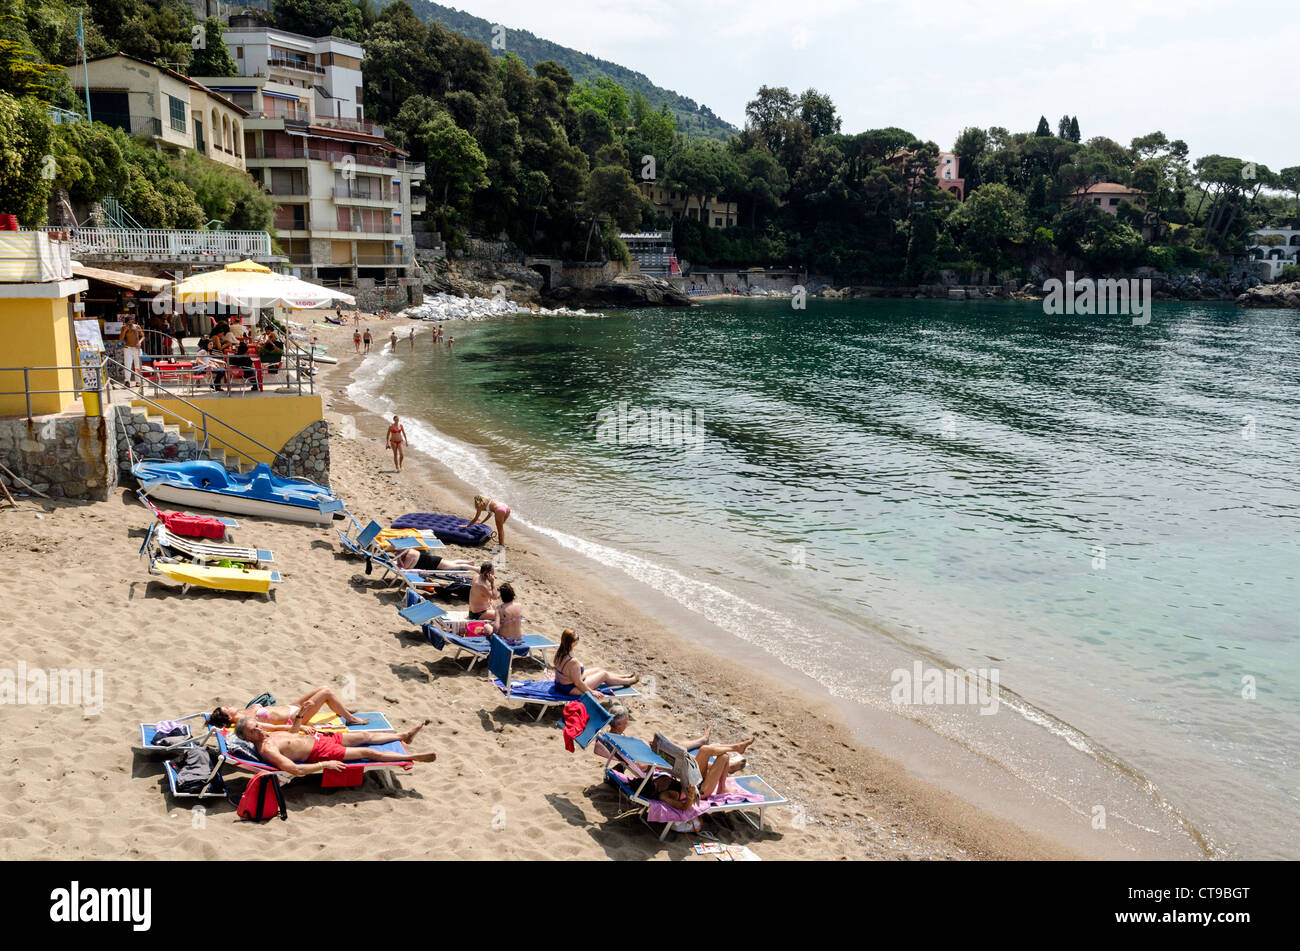 People sunbathing on the beach Lerici Tuscany Italy Stock Photo